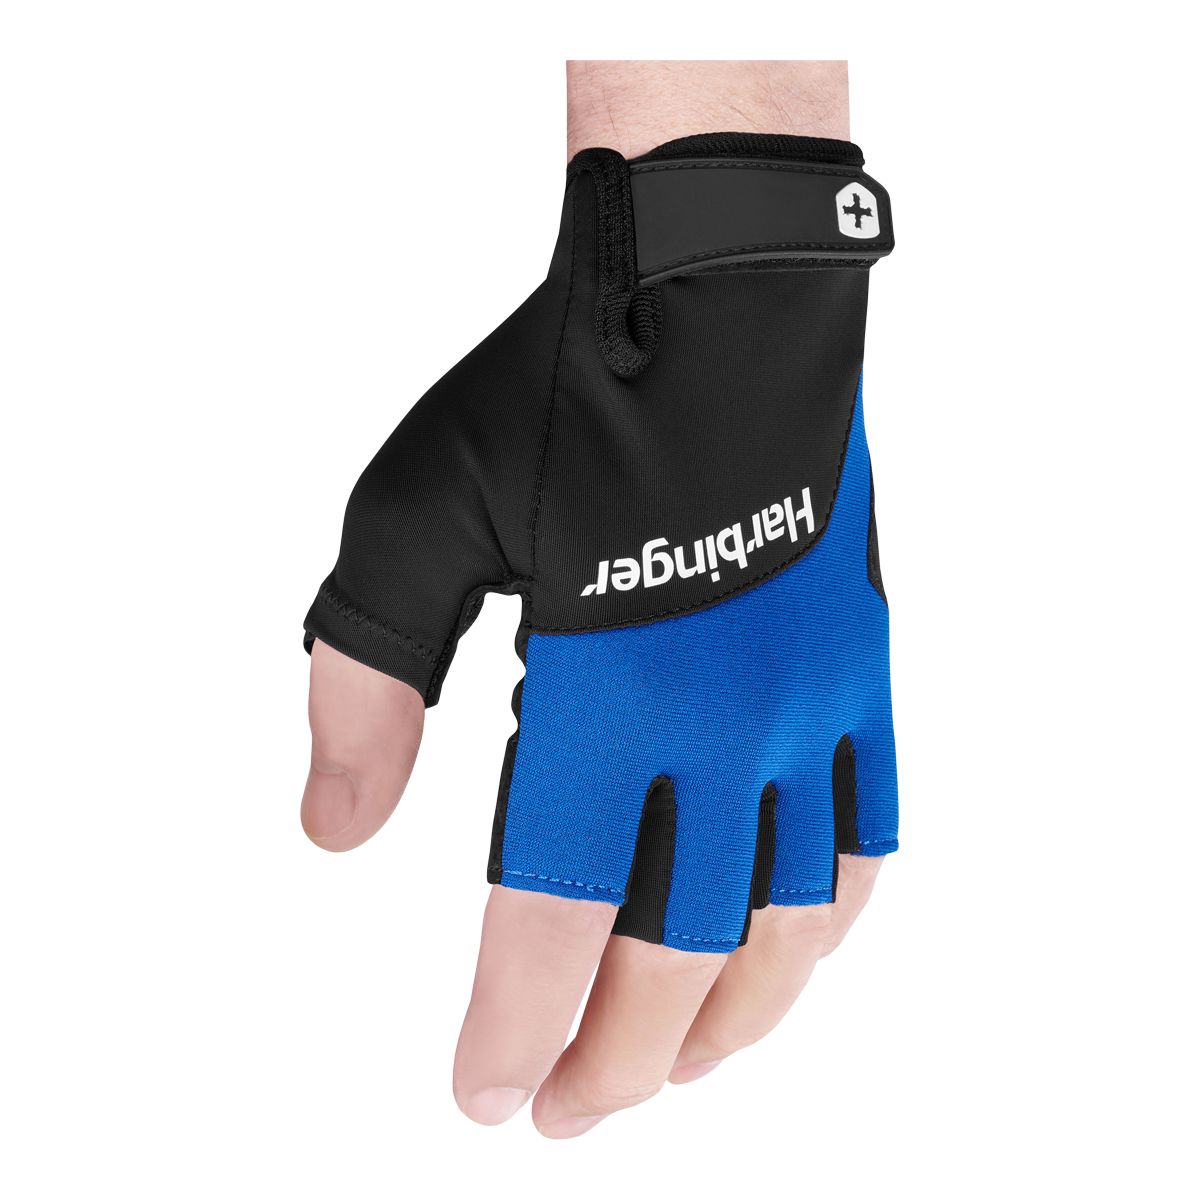 Habinger Training Grip Gloves 2.0